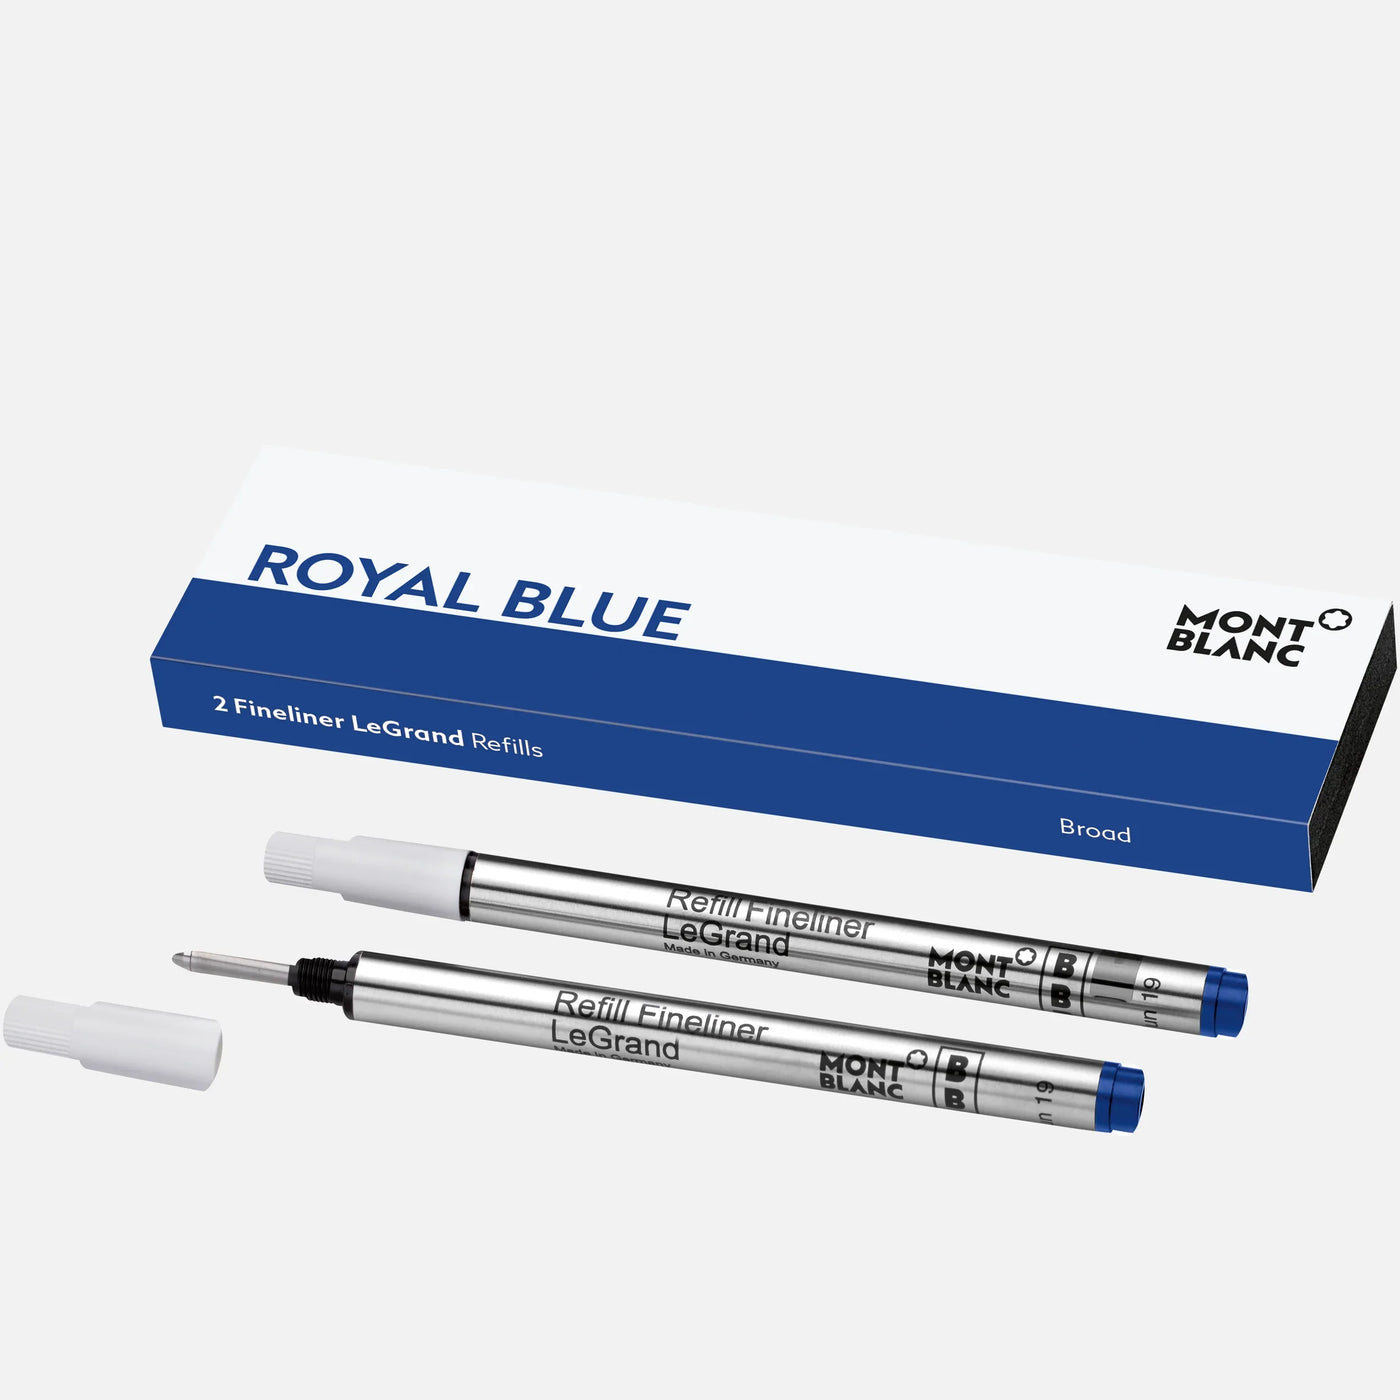 Montblanc Royal Blue 2 Fineliner LeGrand Refills - Broad